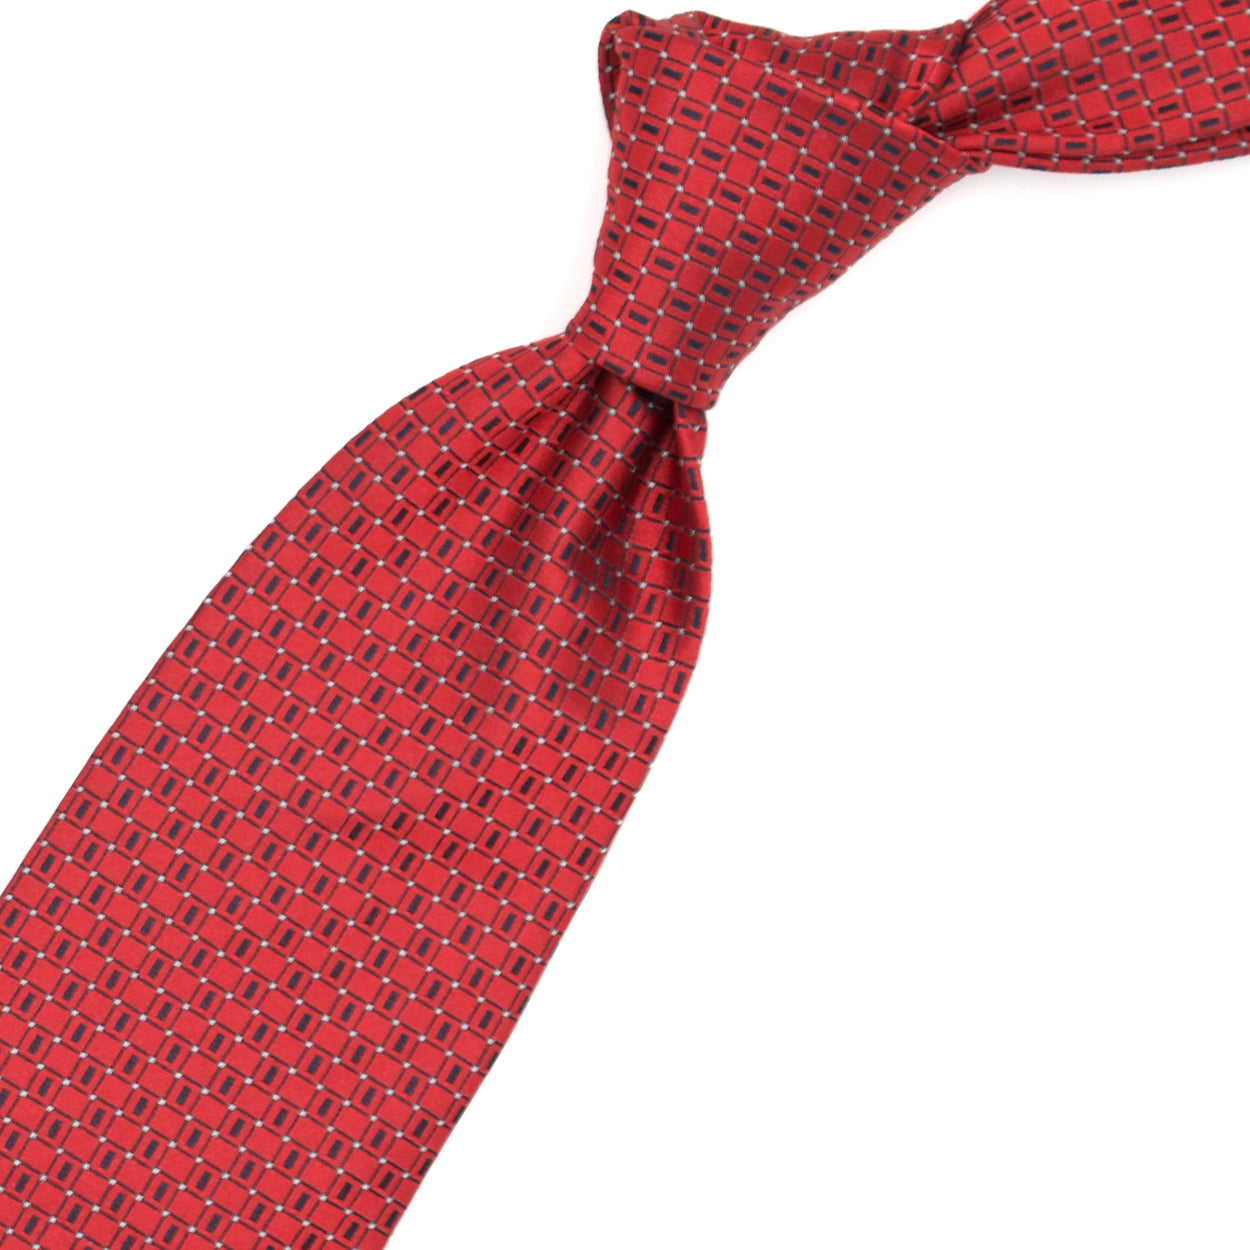 Cravatta rossa con pattern nero e puntini bianchi